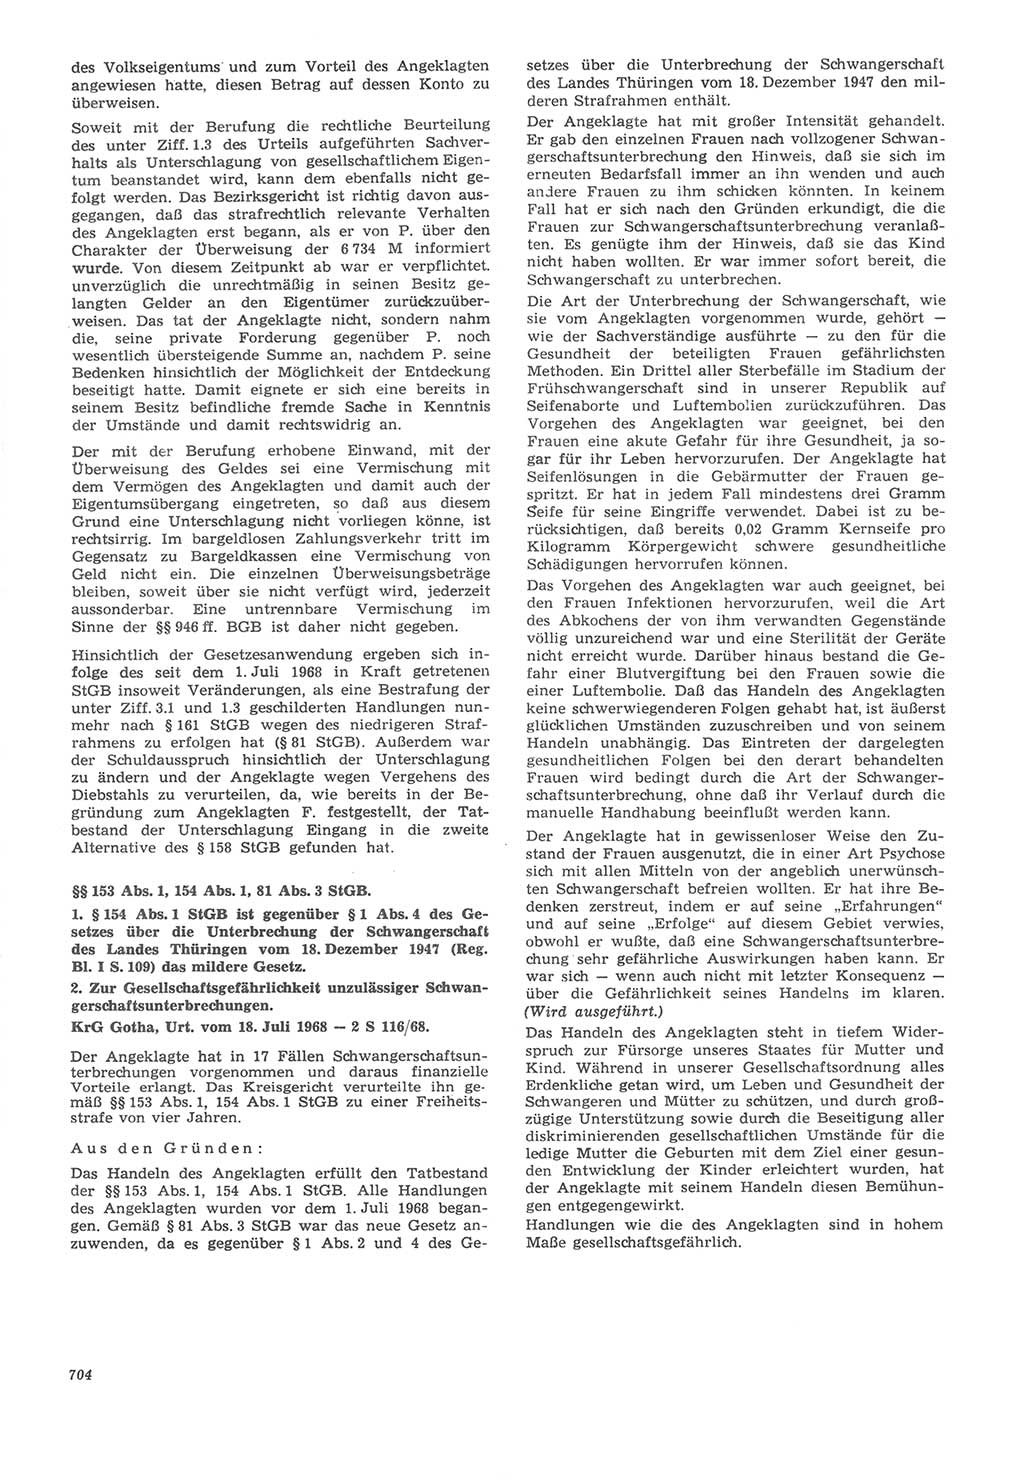 Neue Justiz (NJ), Zeitschrift für Recht und Rechtswissenschaft [Deutsche Demokratische Republik (DDR)], 22. Jahrgang 1968, Seite 704 (NJ DDR 1968, S. 704)